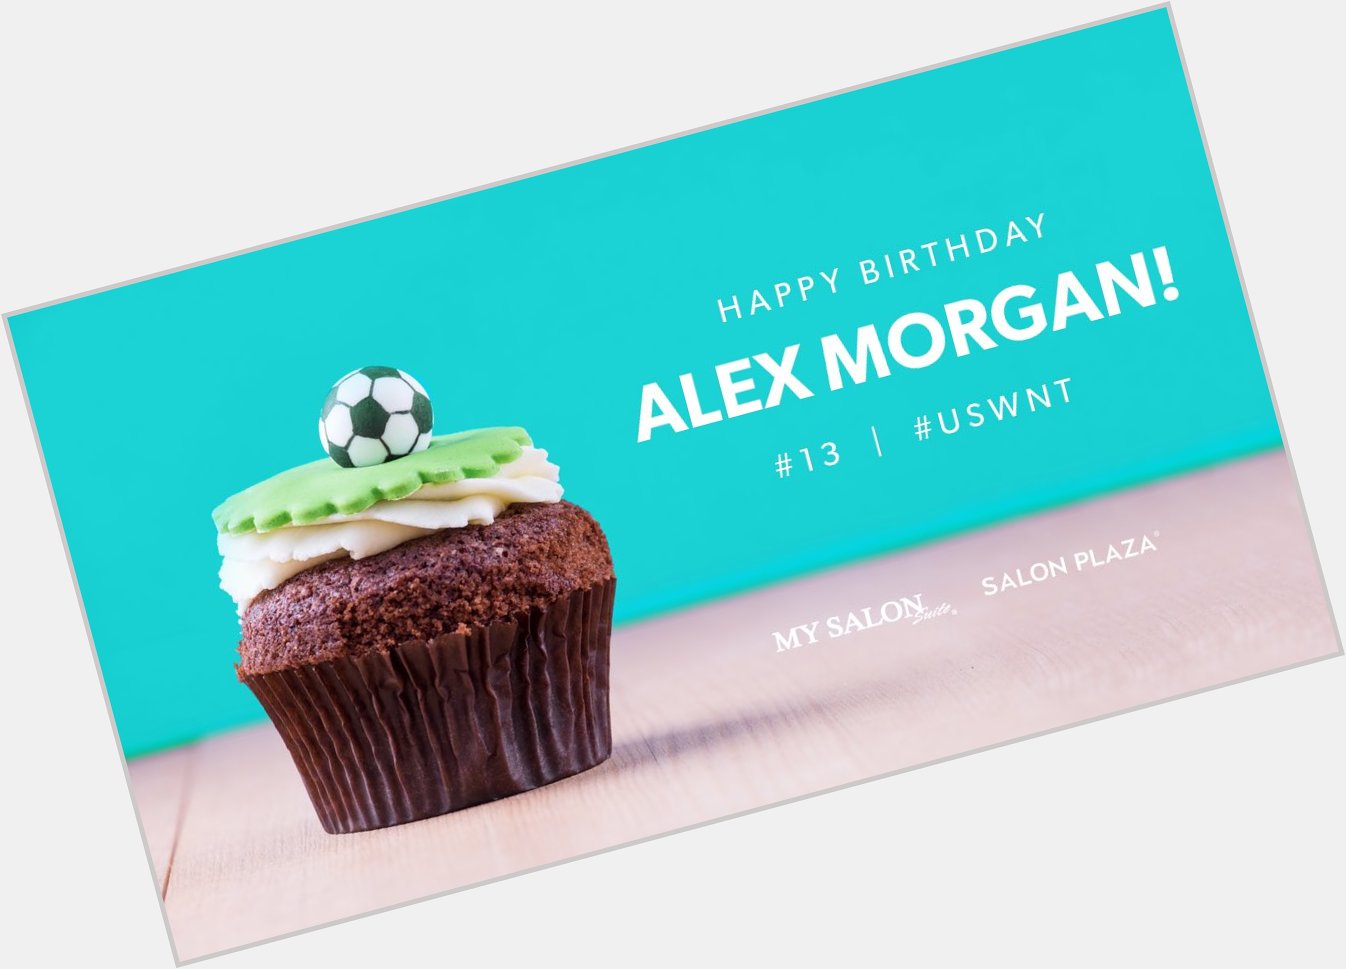 Happy birthday to Alex Morgan!  